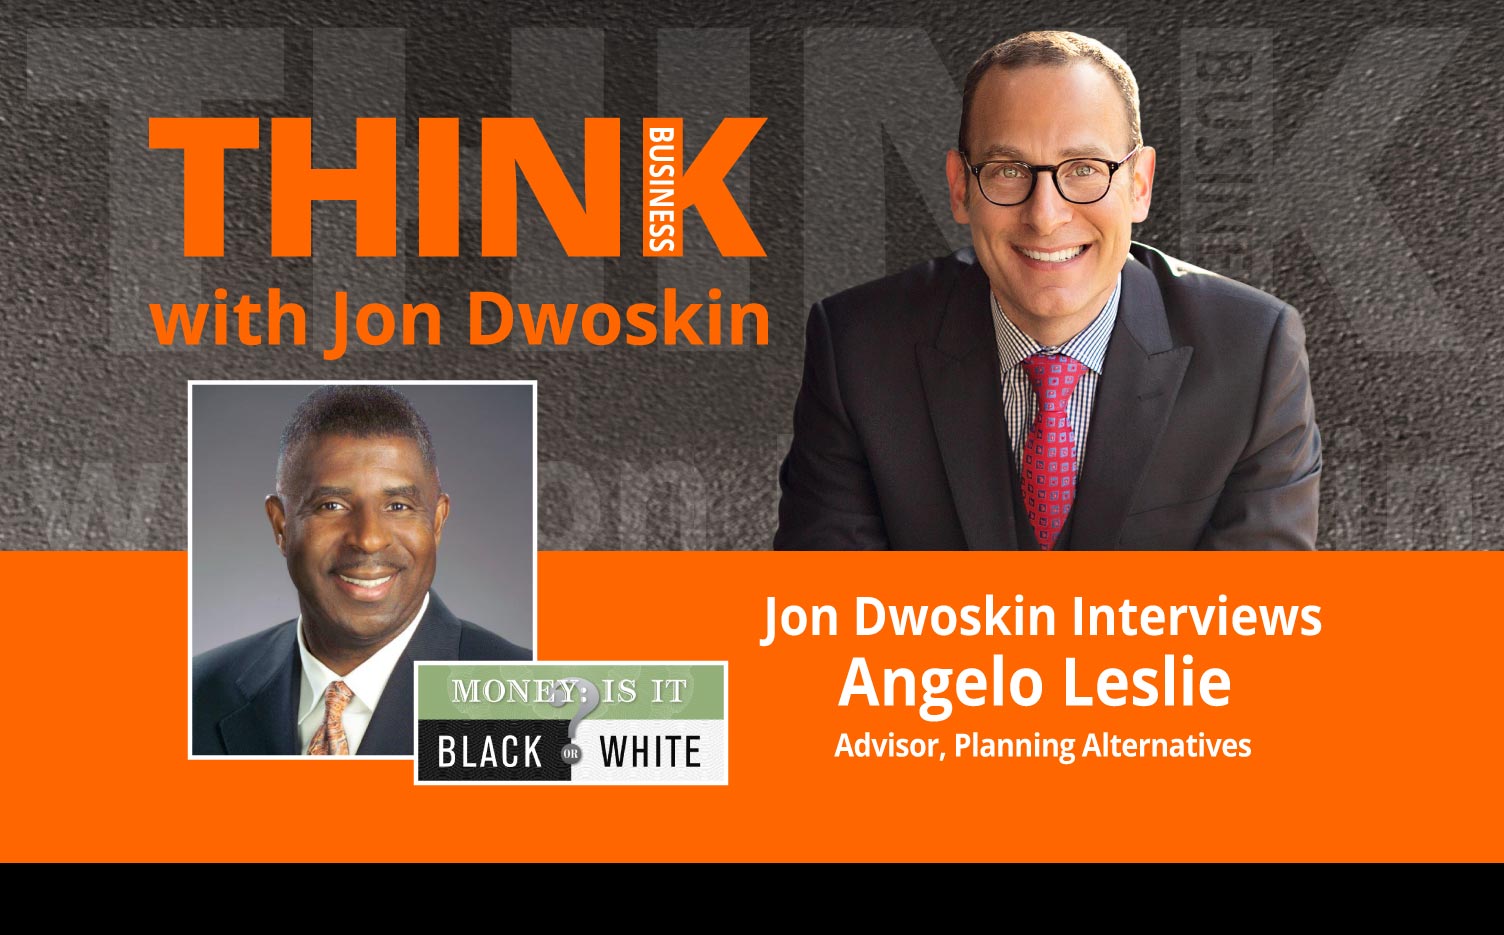 THINK Business Podcast: Jon Dwoskin Interviews Angelo Leslie, Advisor, Planning Alternatives